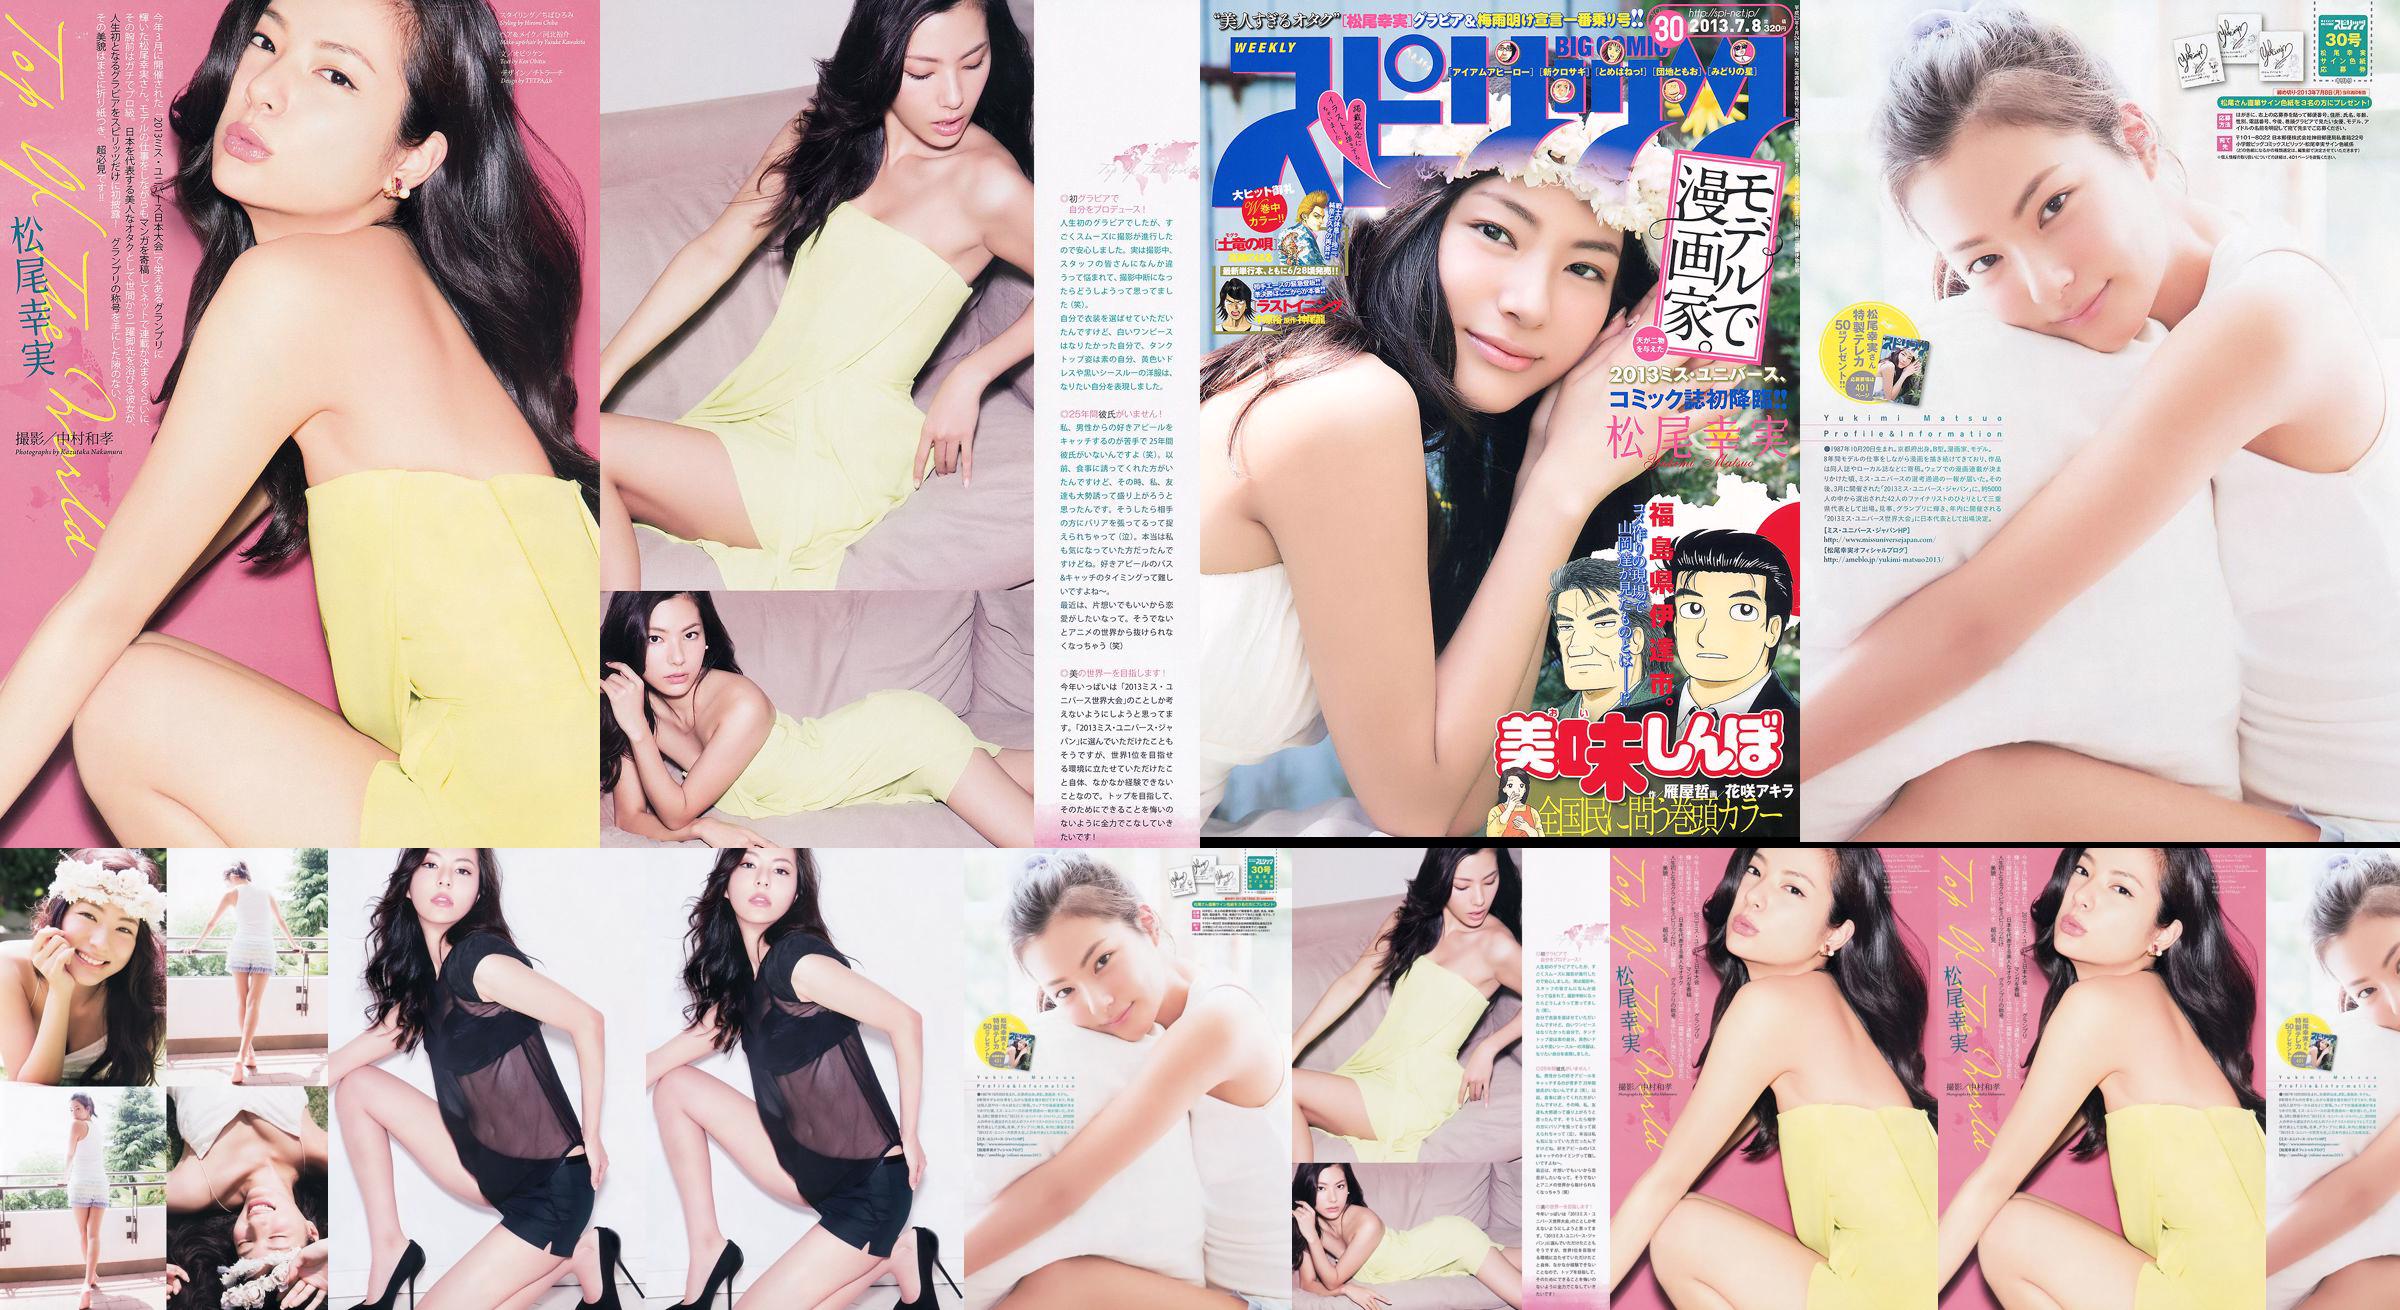 [Grands esprits de la bande dessinée hebdomadaire] Komi Matsuo 2013 No.30 Photo Magazine No.f03f86 Page 1